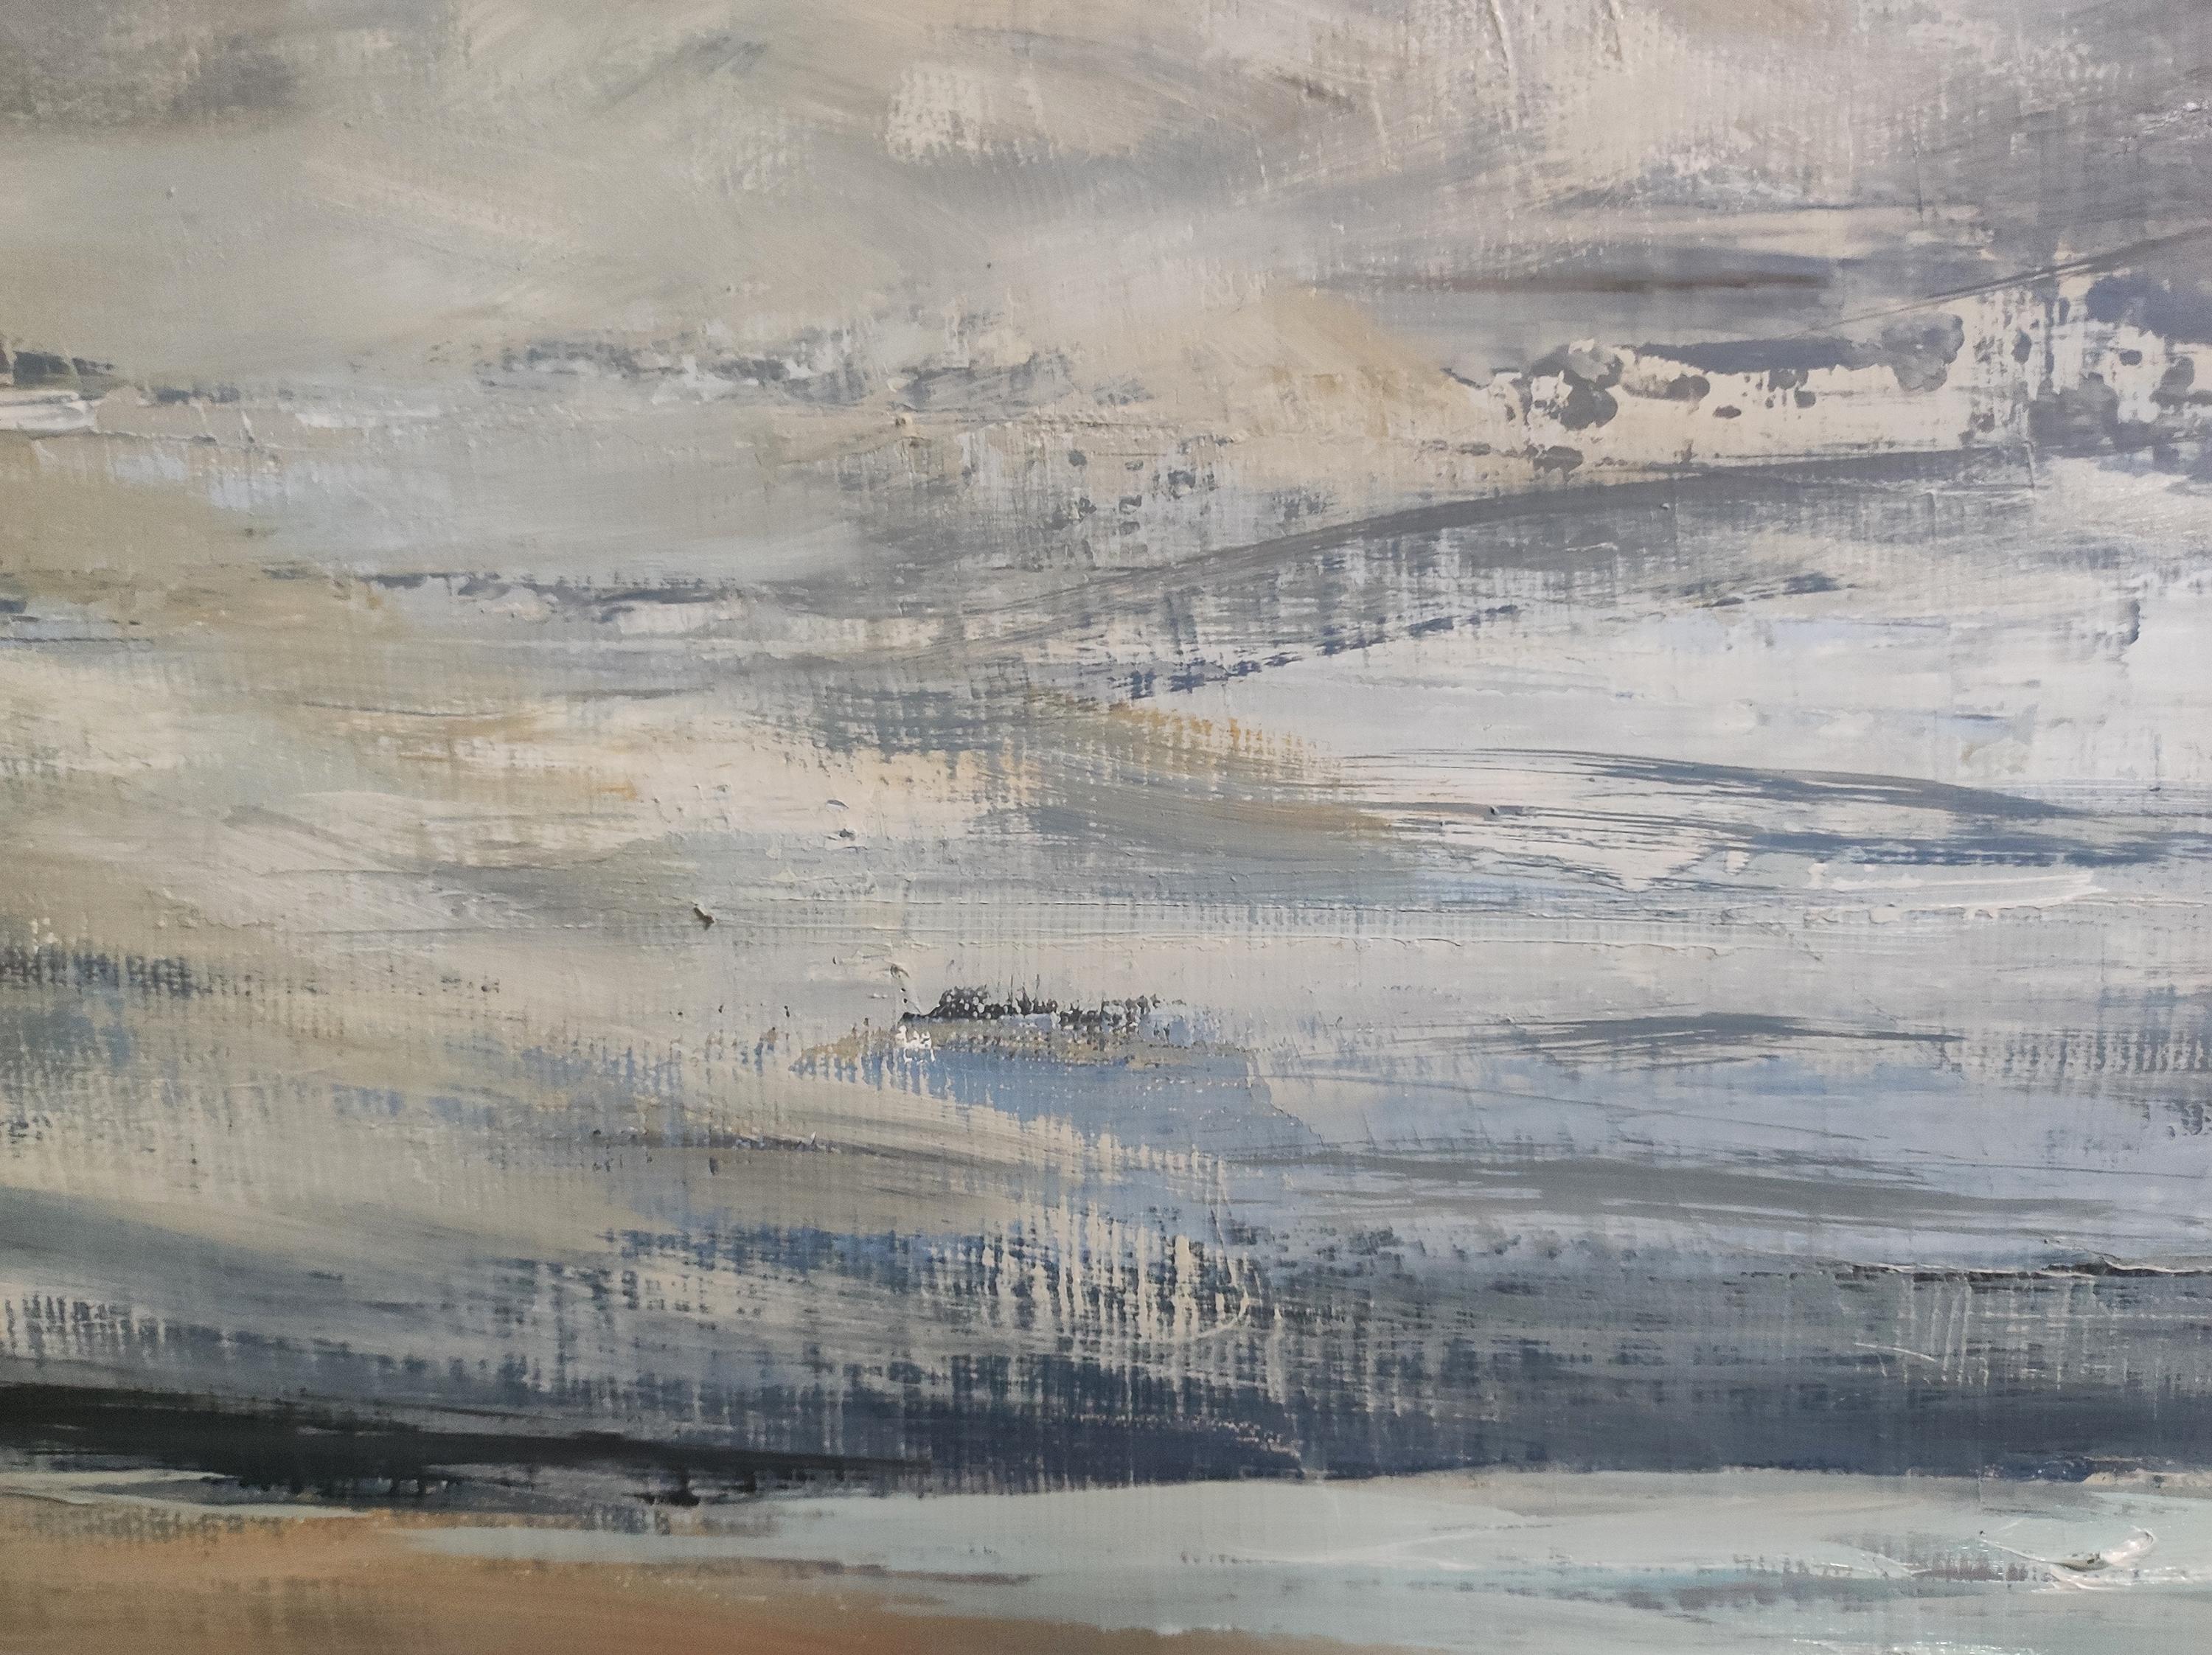 la côte fleurie, bord de mer, paysage abstrait, marine, huile sur toile 46x55 cm - Post-Impressionist Painting by SOPHIE DUMONT